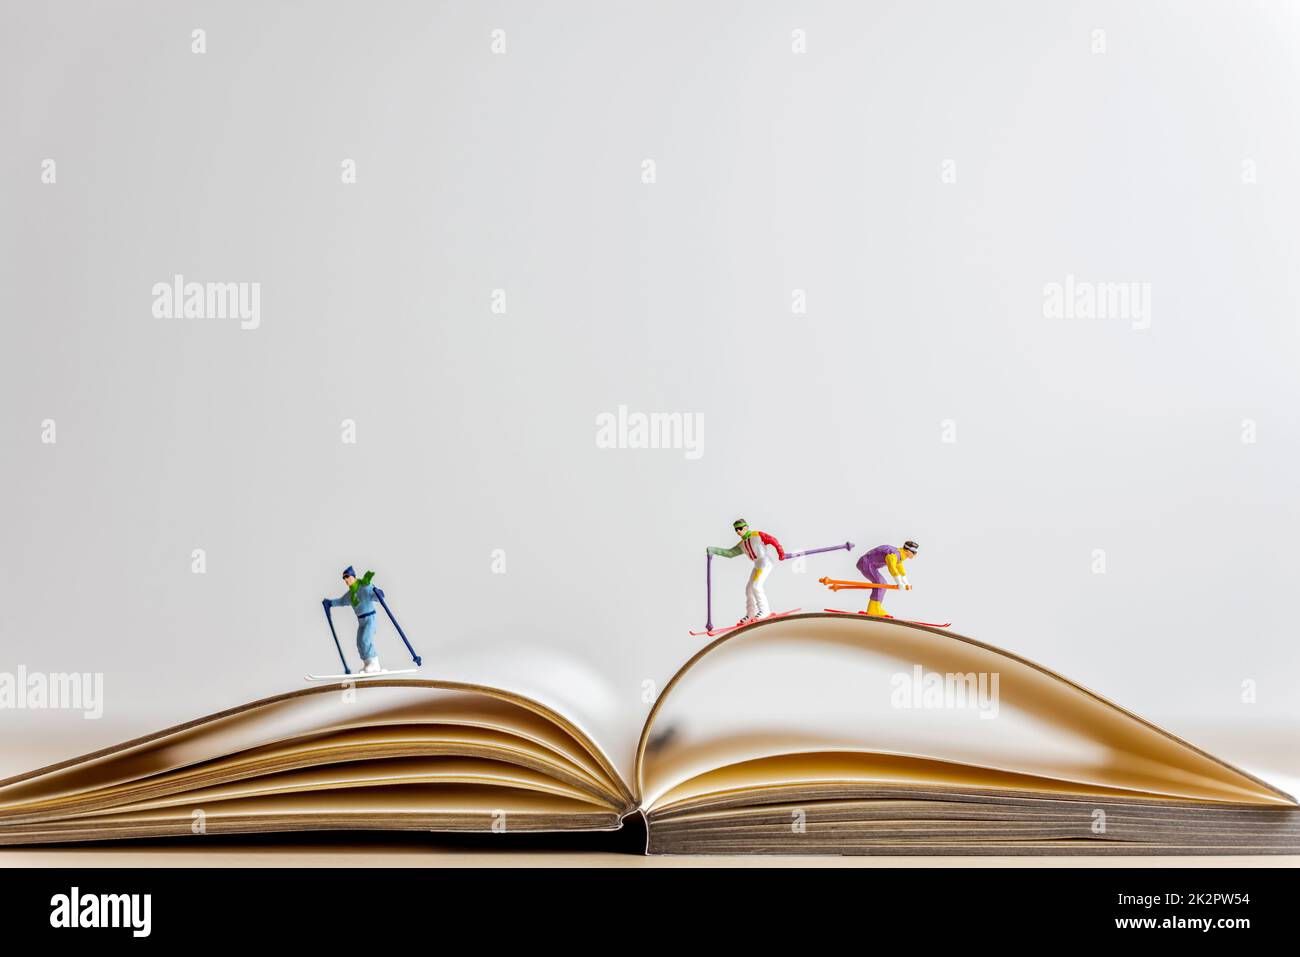 Les skieurs miniatures glissent vers le bas du livre ouvert Banque D'Images